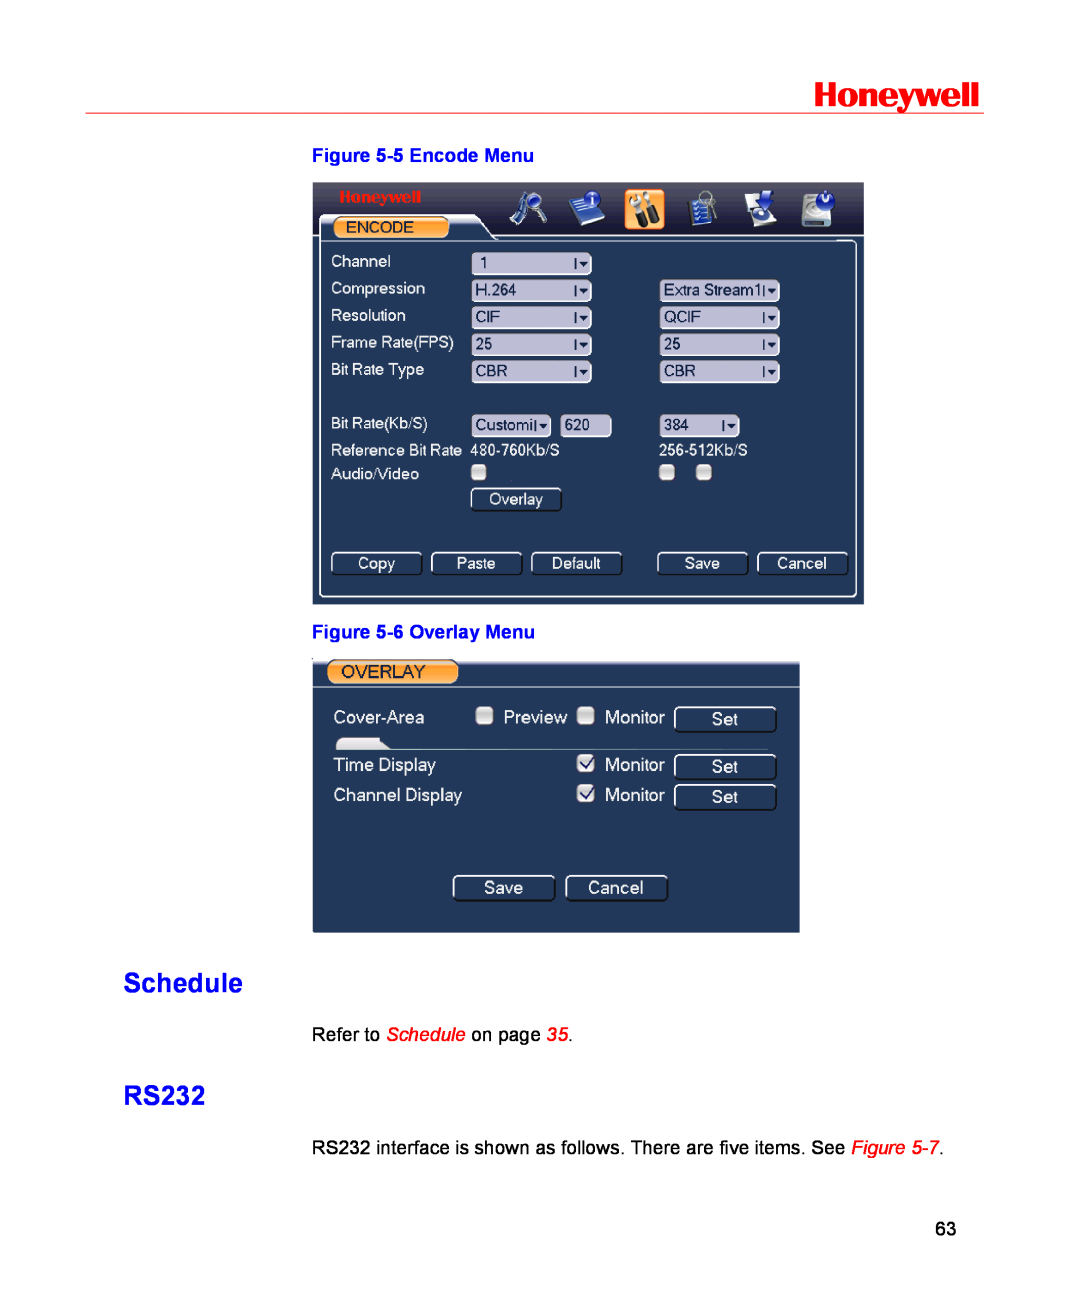 Honeywell HSVR-16, HSVR-04 user manual Schedule, RS232, Honeywell, 5 Encode Menu -6 Overlay Menu 